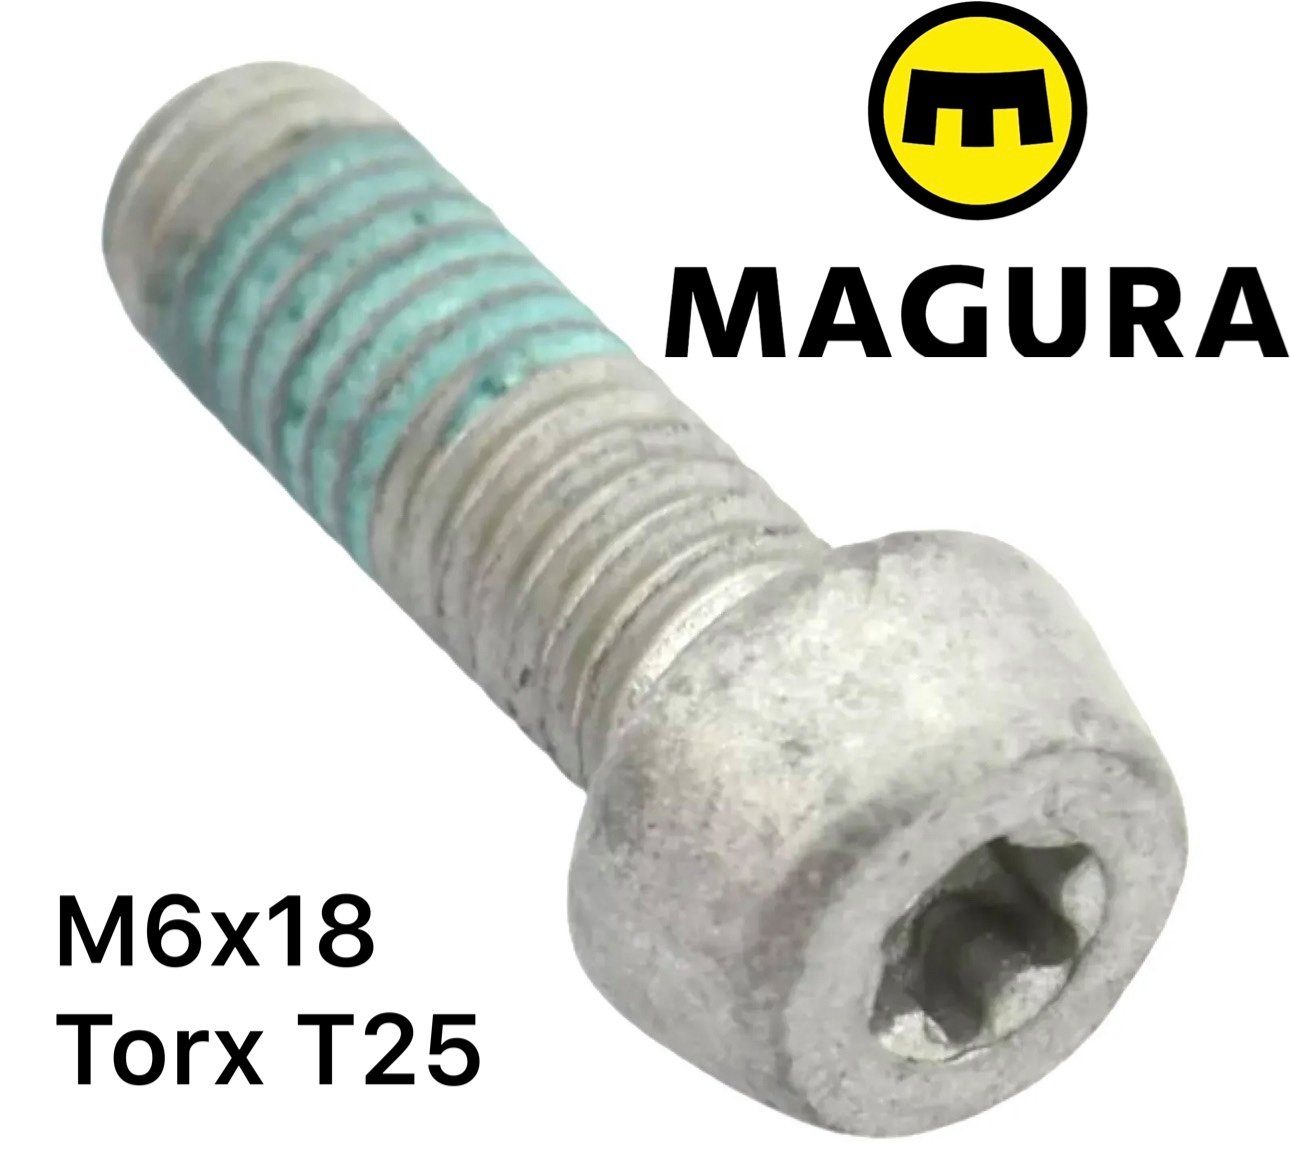 Magura Schrauben-Set Magura Alu M6x18 T25 Befestigungschraube Adapter Torx